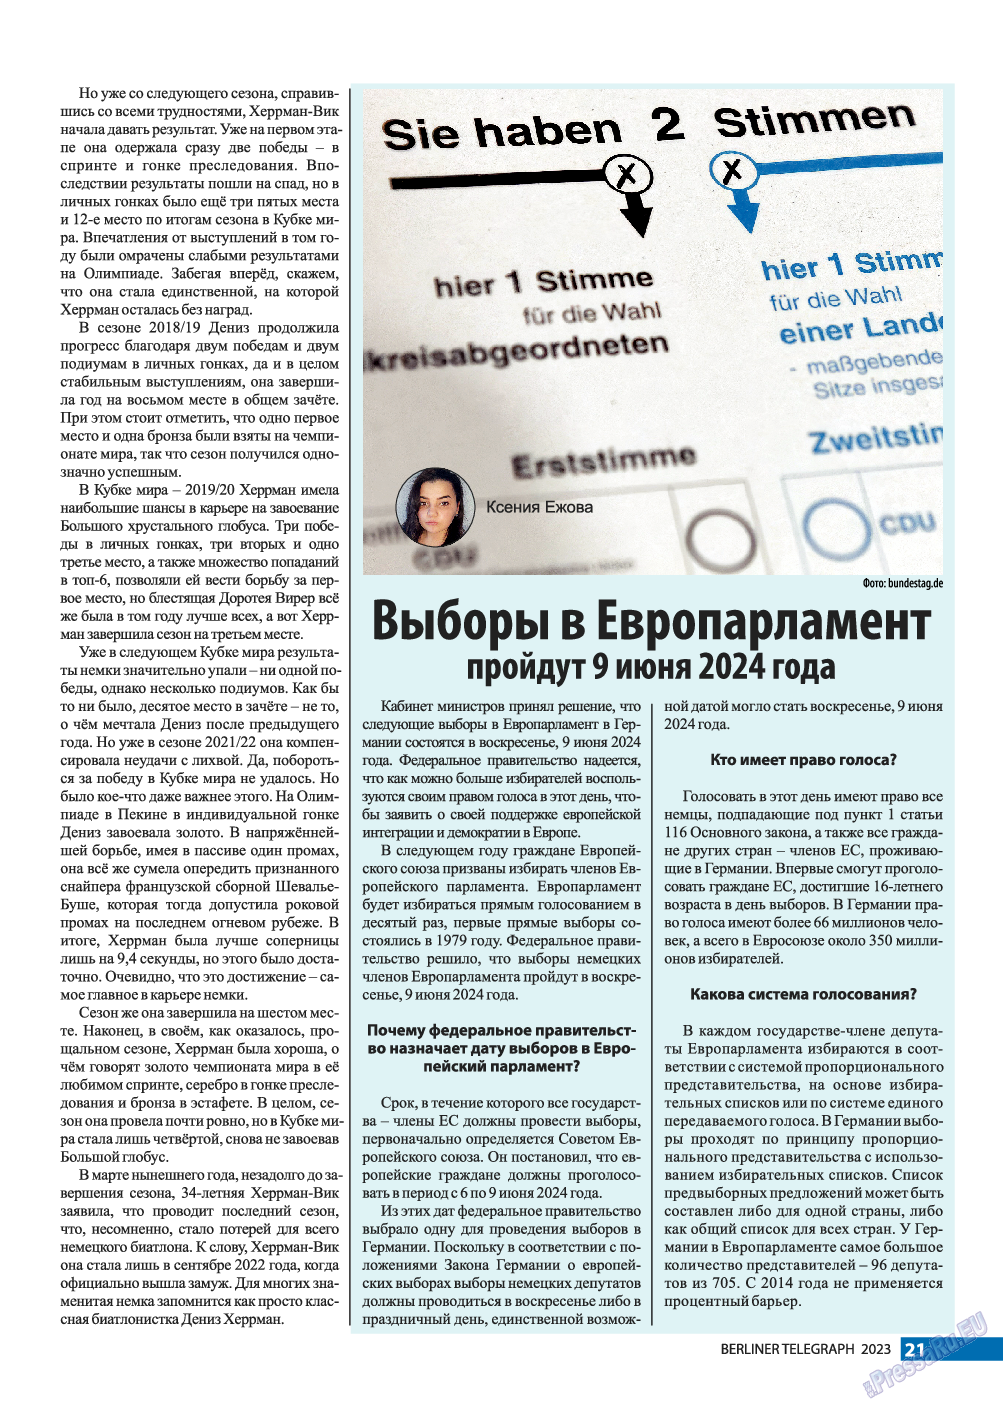 Берлинский телеграф, журнал. 2023 №3 стр.21